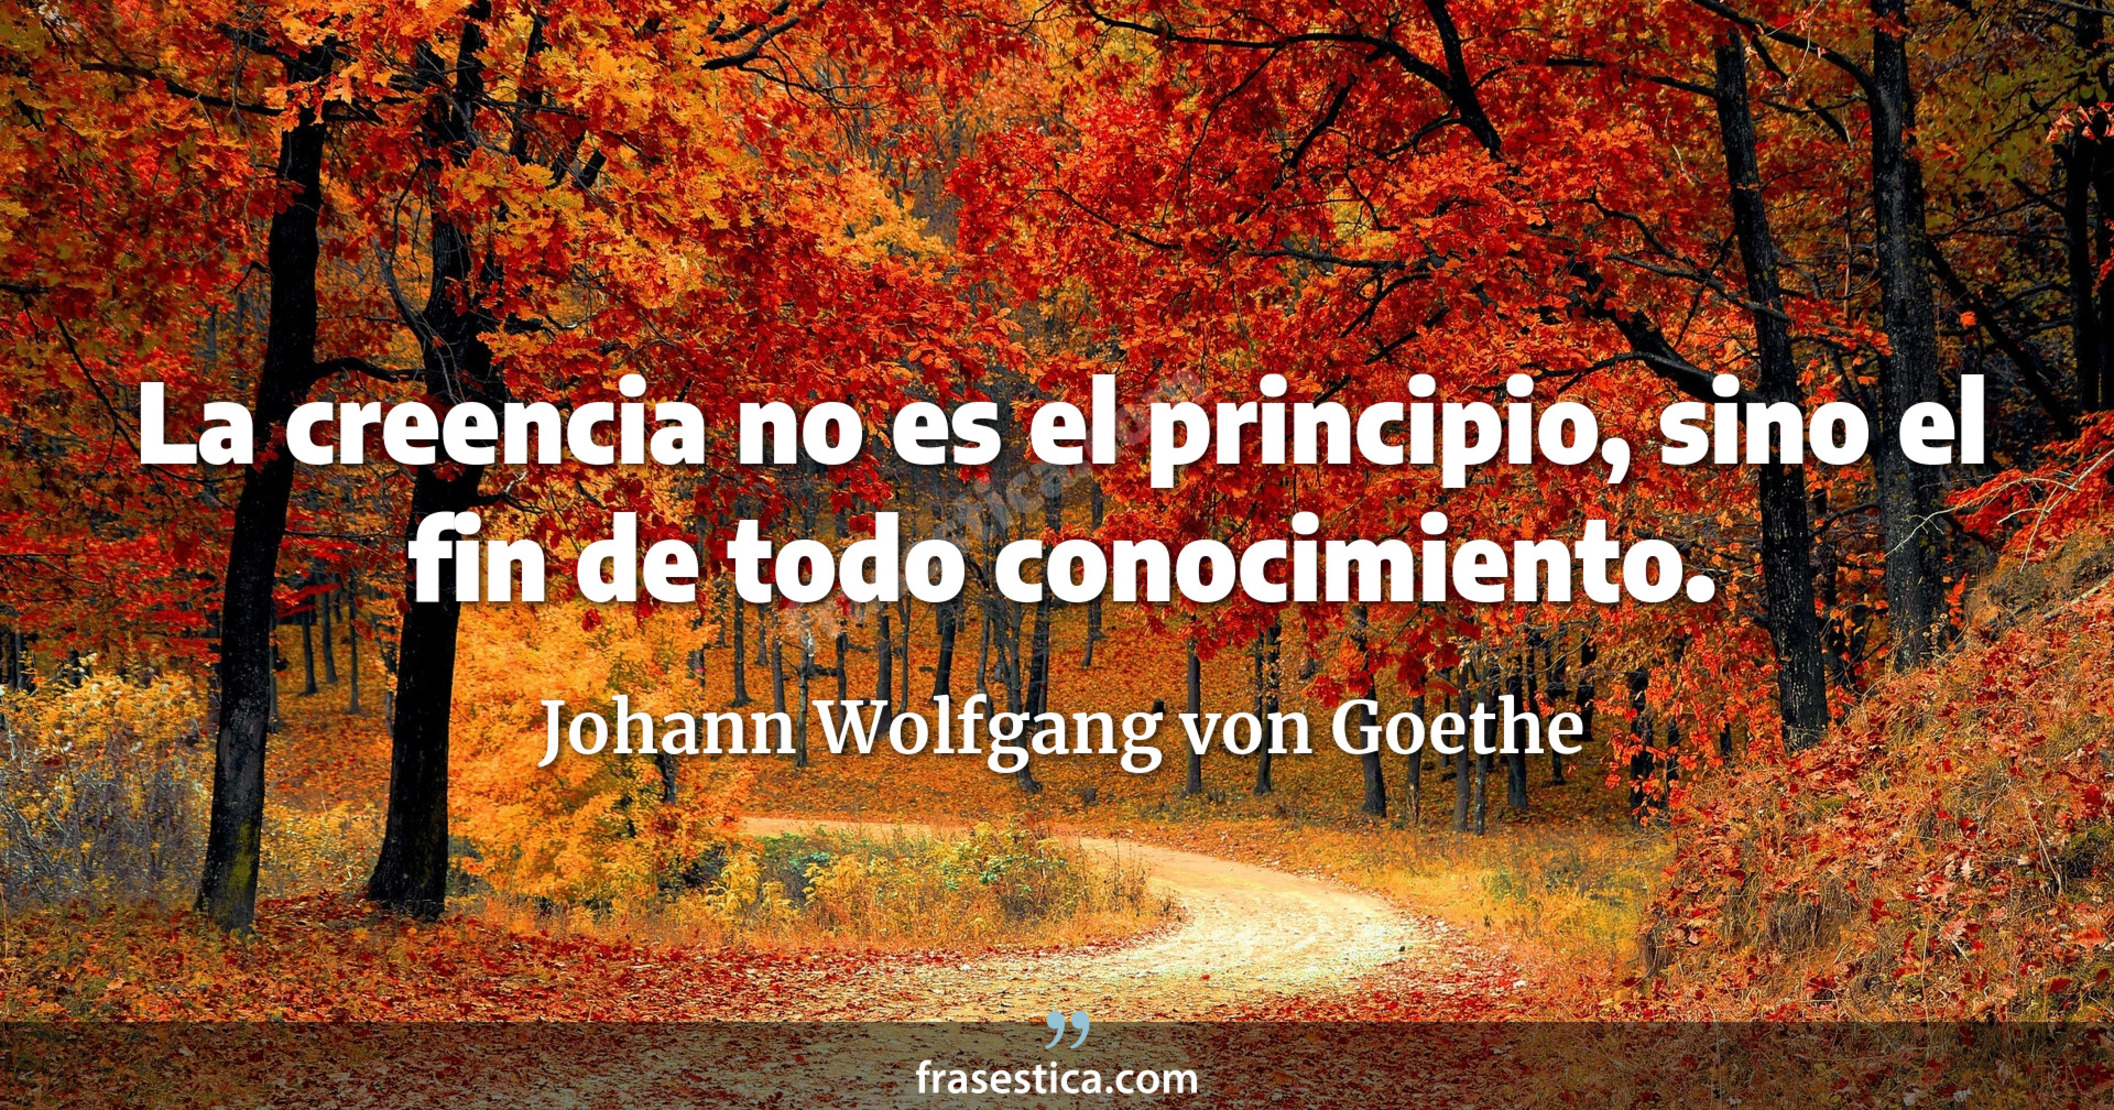 La creencia no es el principio, sino el fin de todo conocimiento. - Johann Wolfgang von Goethe